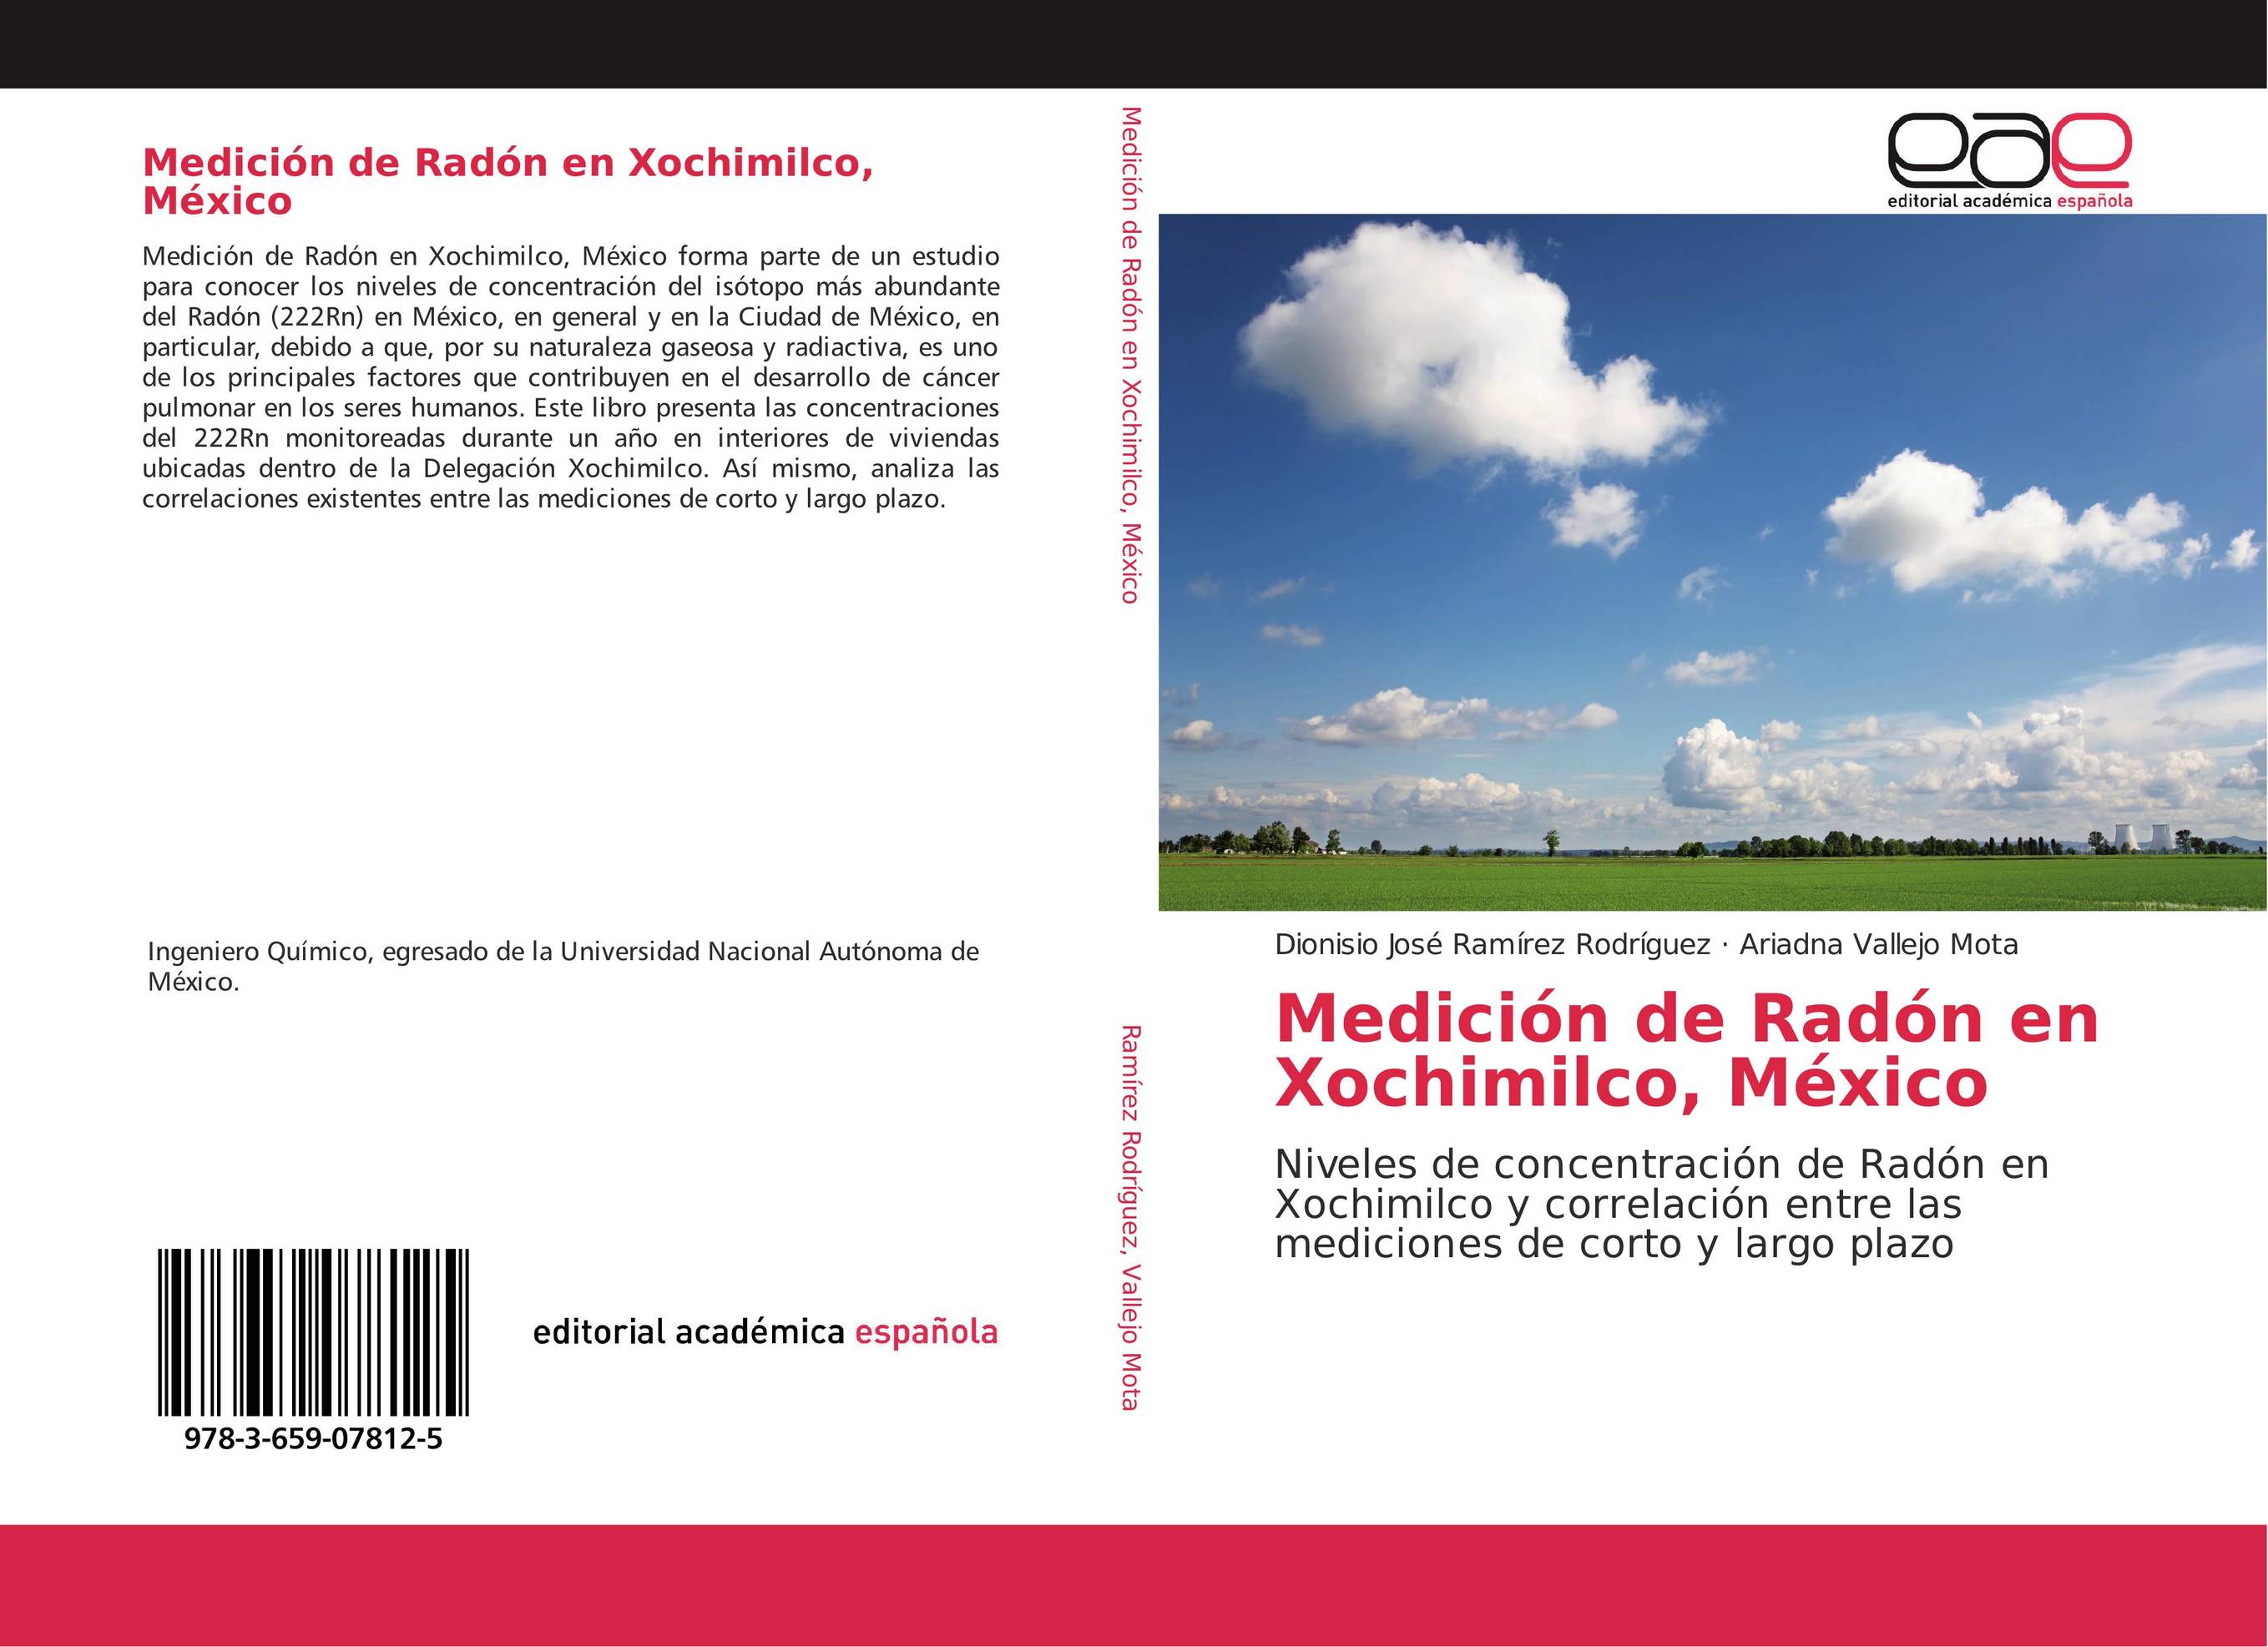 Medición de Radón en Xochimilco, México